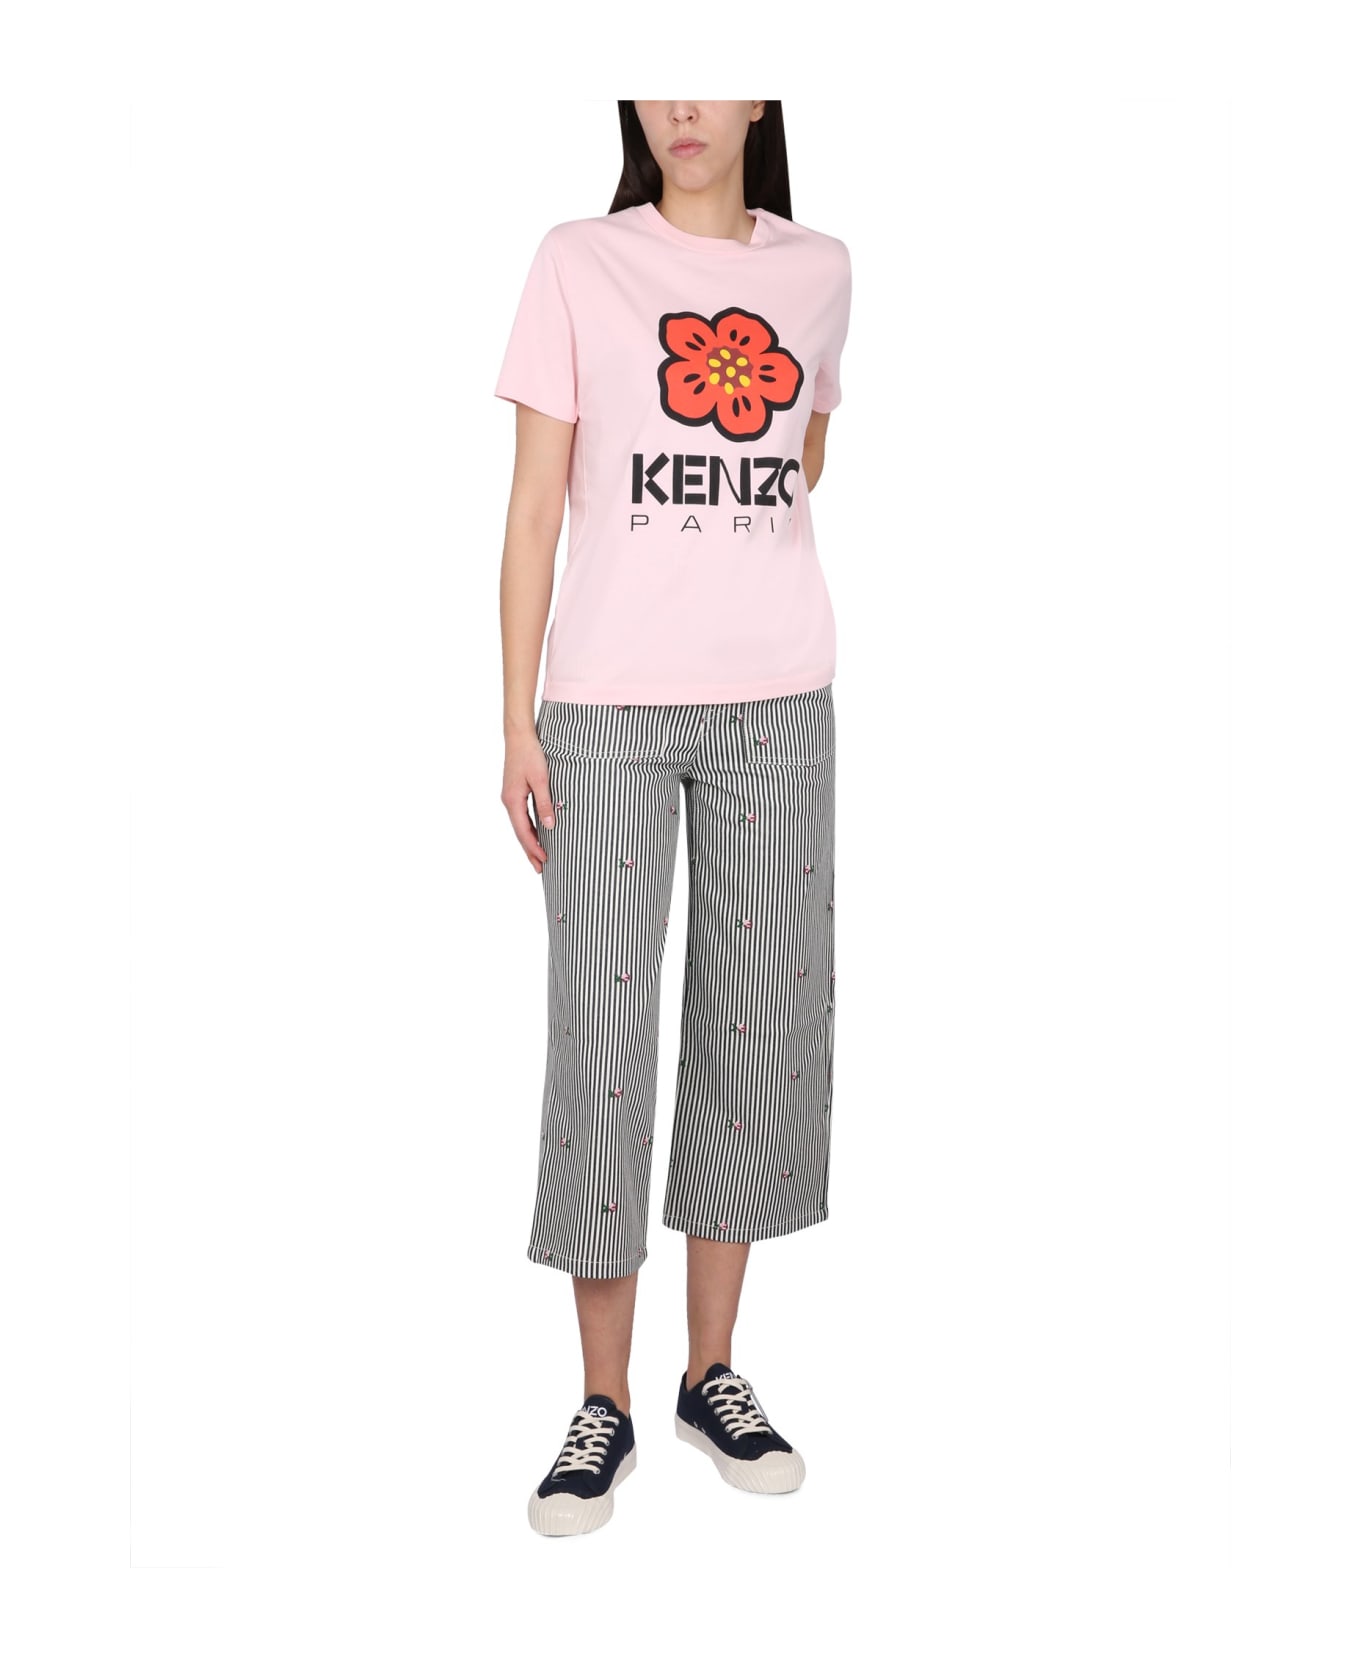 Kenzo Paris Loose T-shirt - Pink Tシャツ